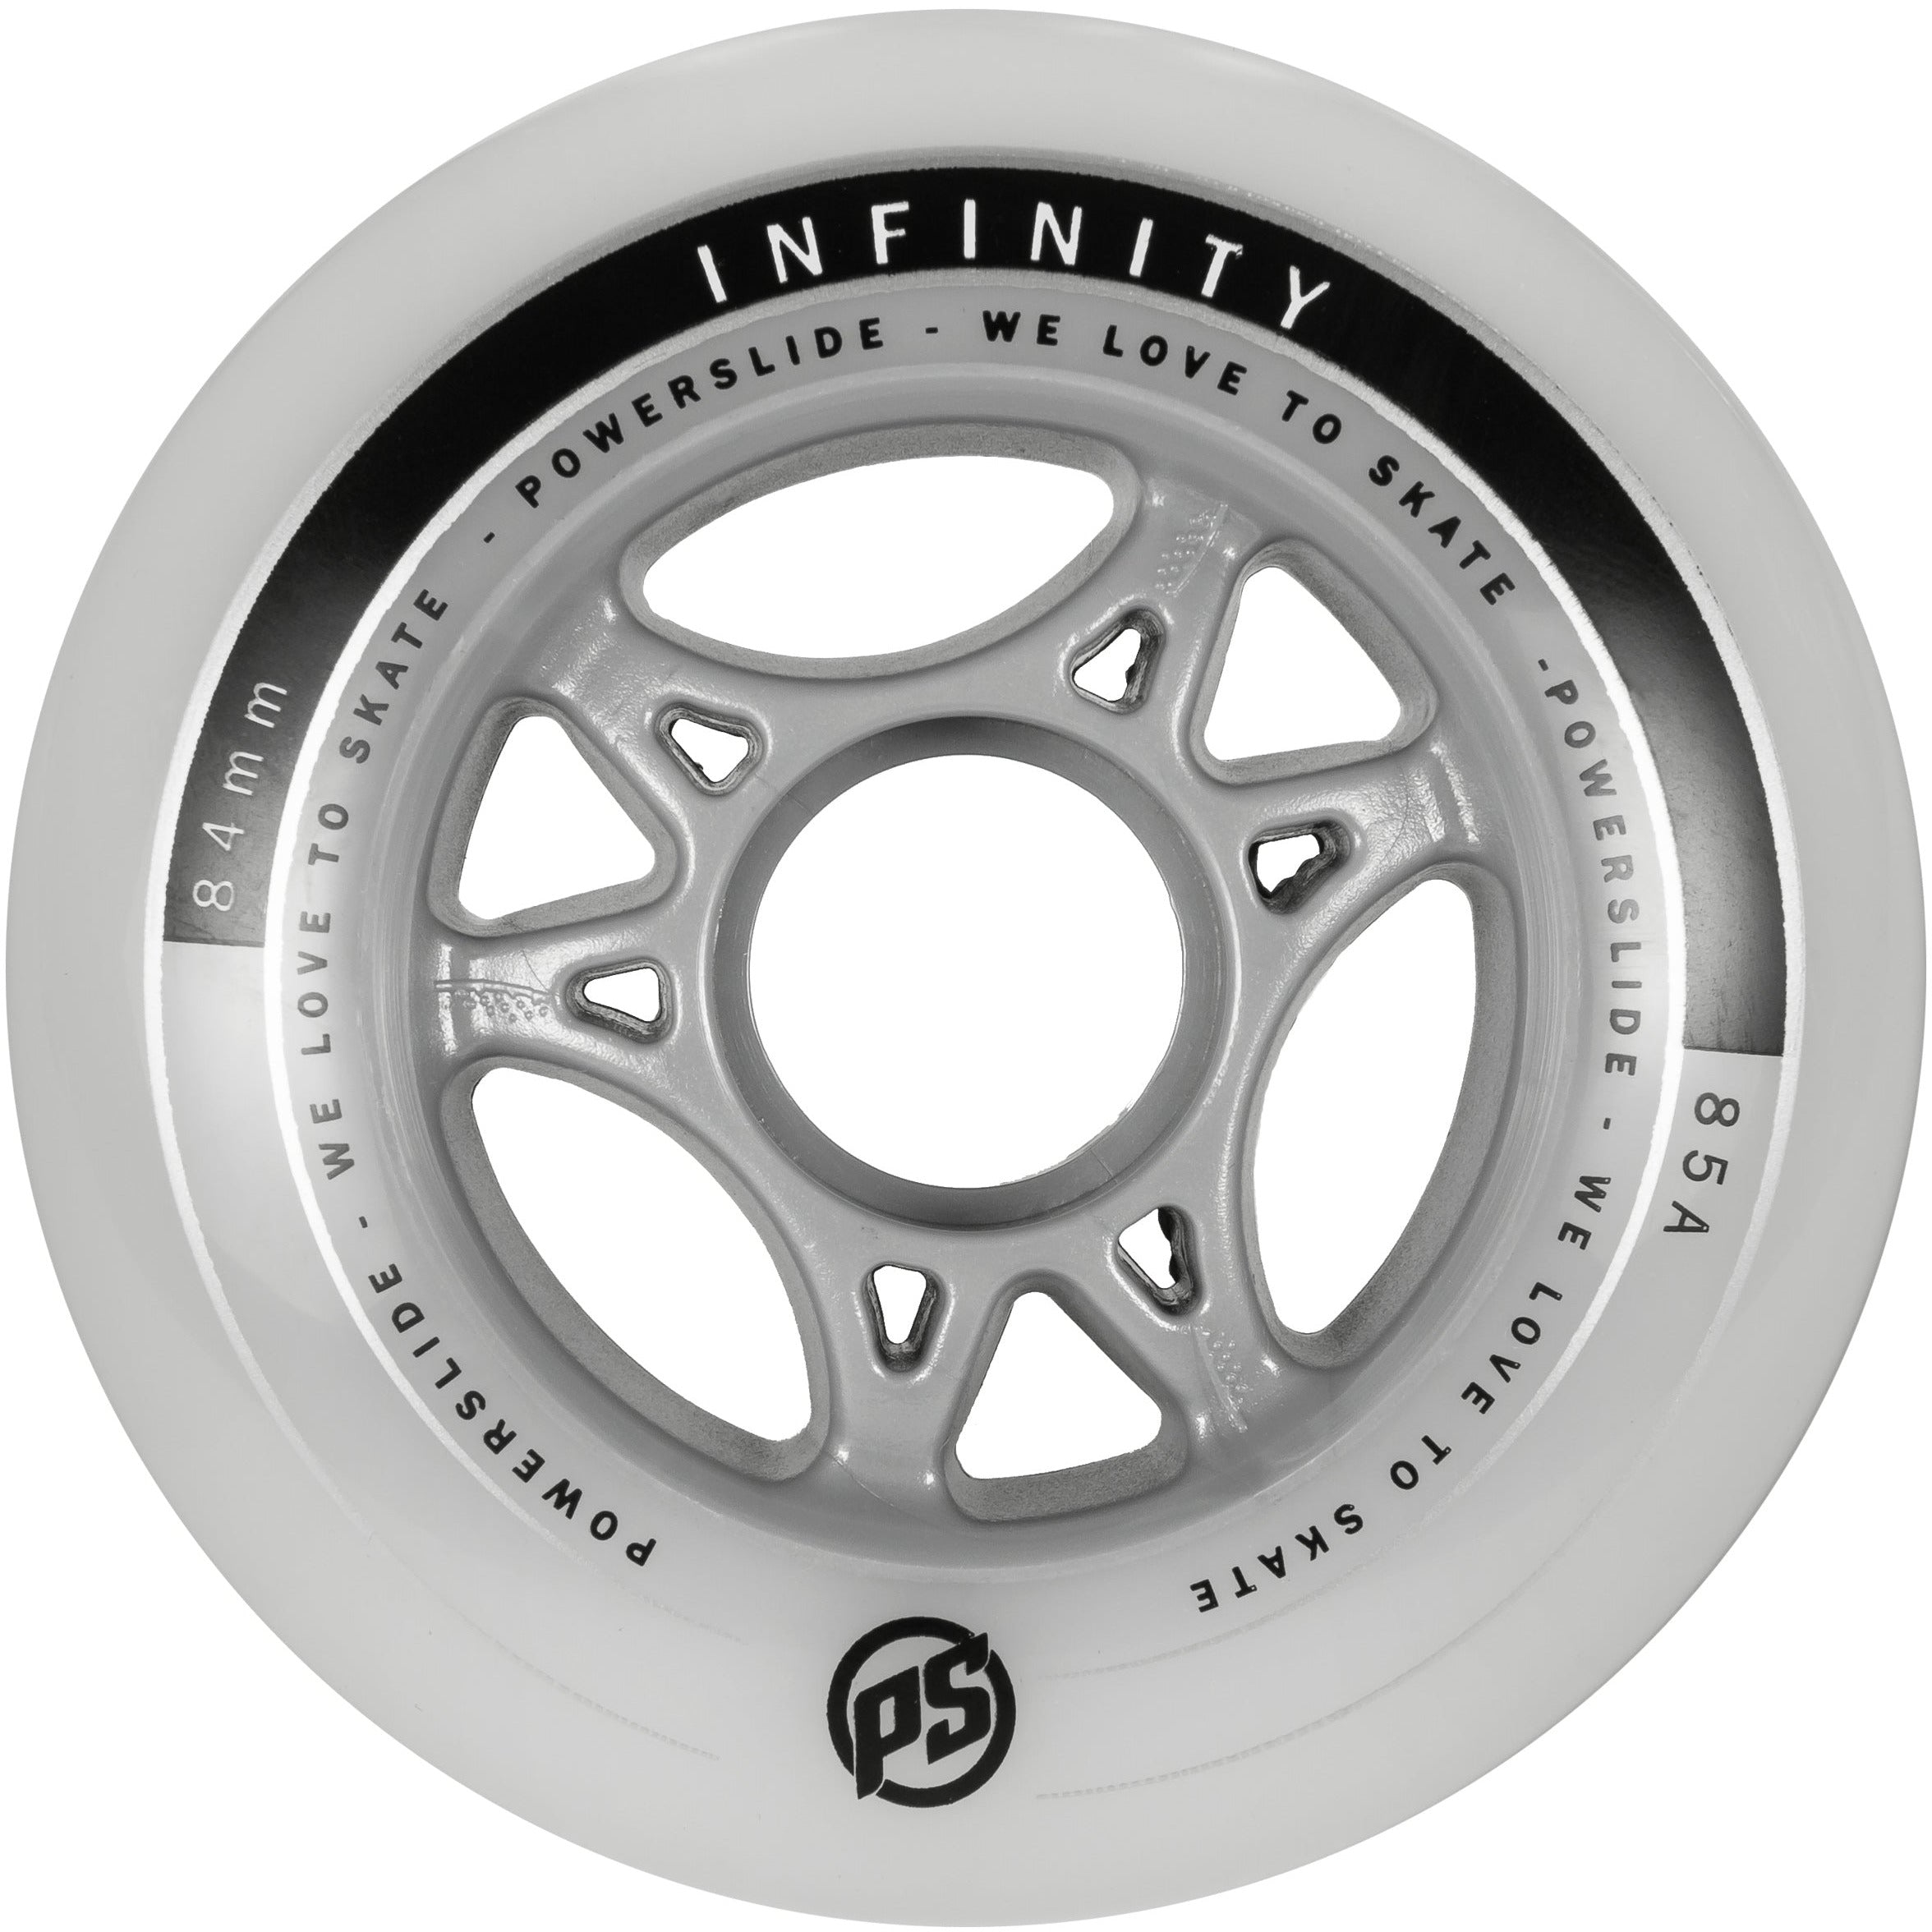 Powerslide Infinity Wheel 84mm (4 pack)